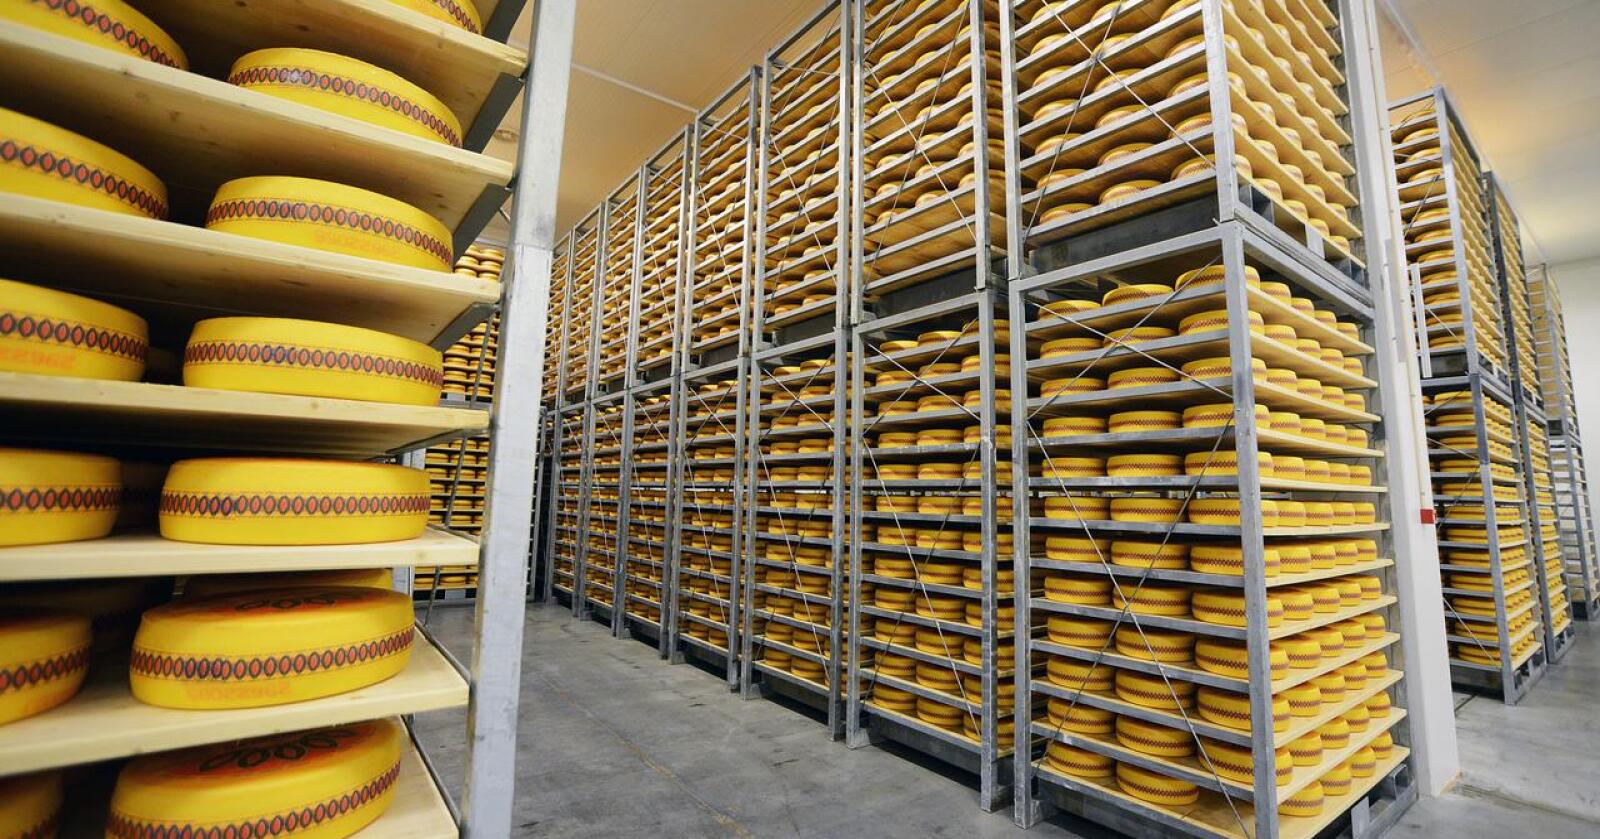 Ostebehov: Tine vil neste år vidareføre eksporten av ost frå Norge omtrent på same nivå som i år. 2000 tonn ost til eksport fører til mindre kutt i mjølkekvotane. Årsaka er ifølgje Tine forseinkingar knytt til oppstart av det nye irske meieriet. Foto: Siri Juell Rasmussen